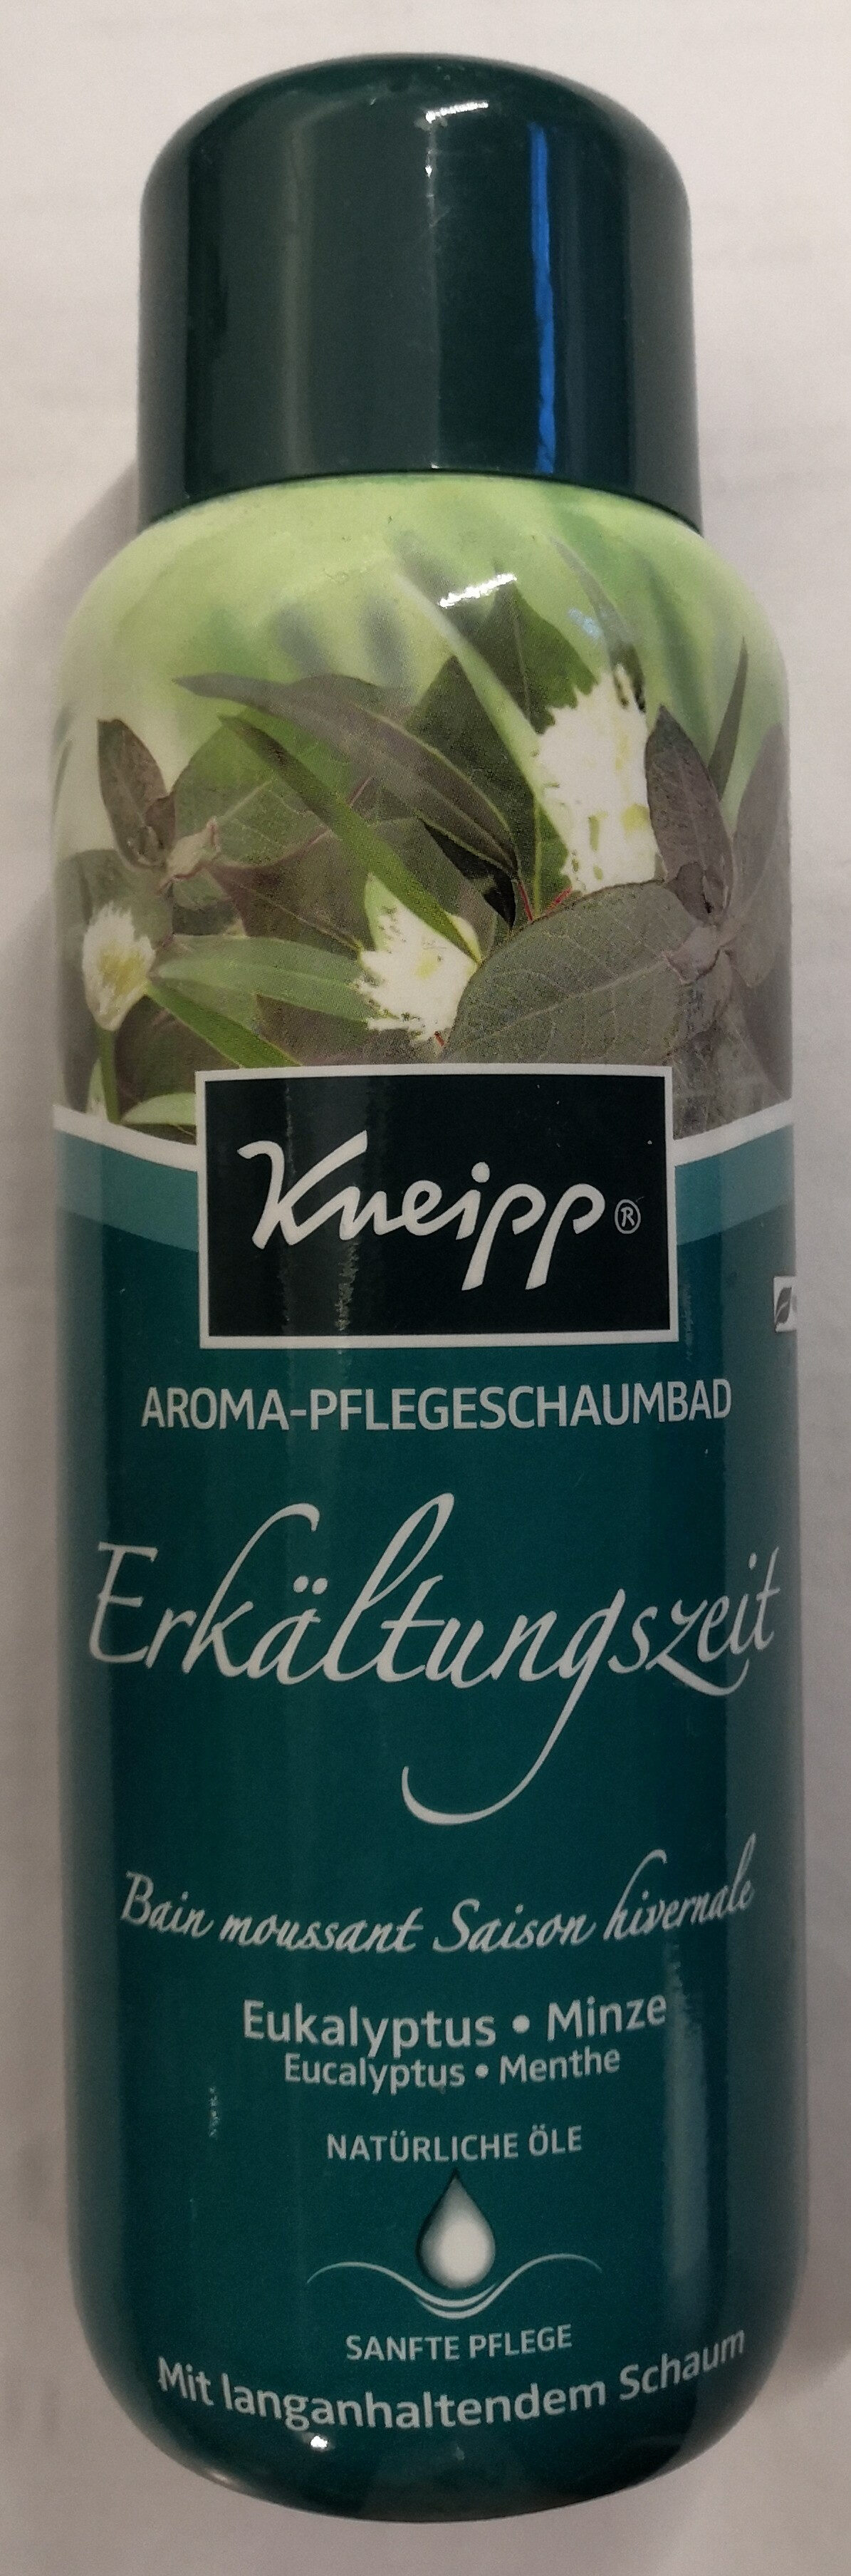 Aroma-Pflegeschaumbad Erkältungszeit Eukalyptus-Minze - Продукт - de